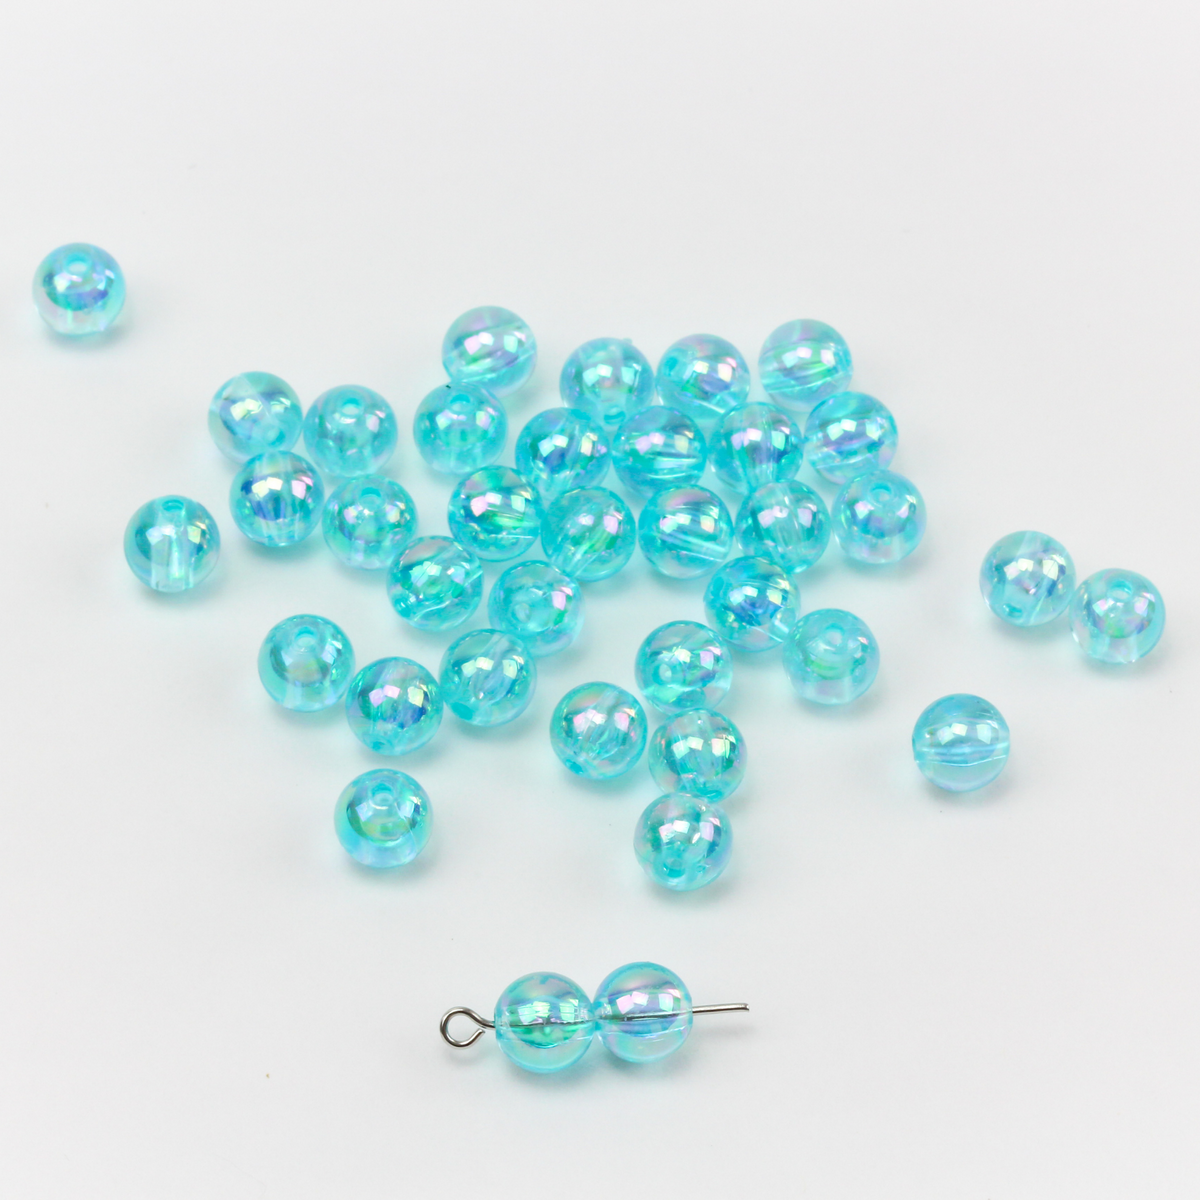 6MM Light Blue Glass Beads (300 pieces)